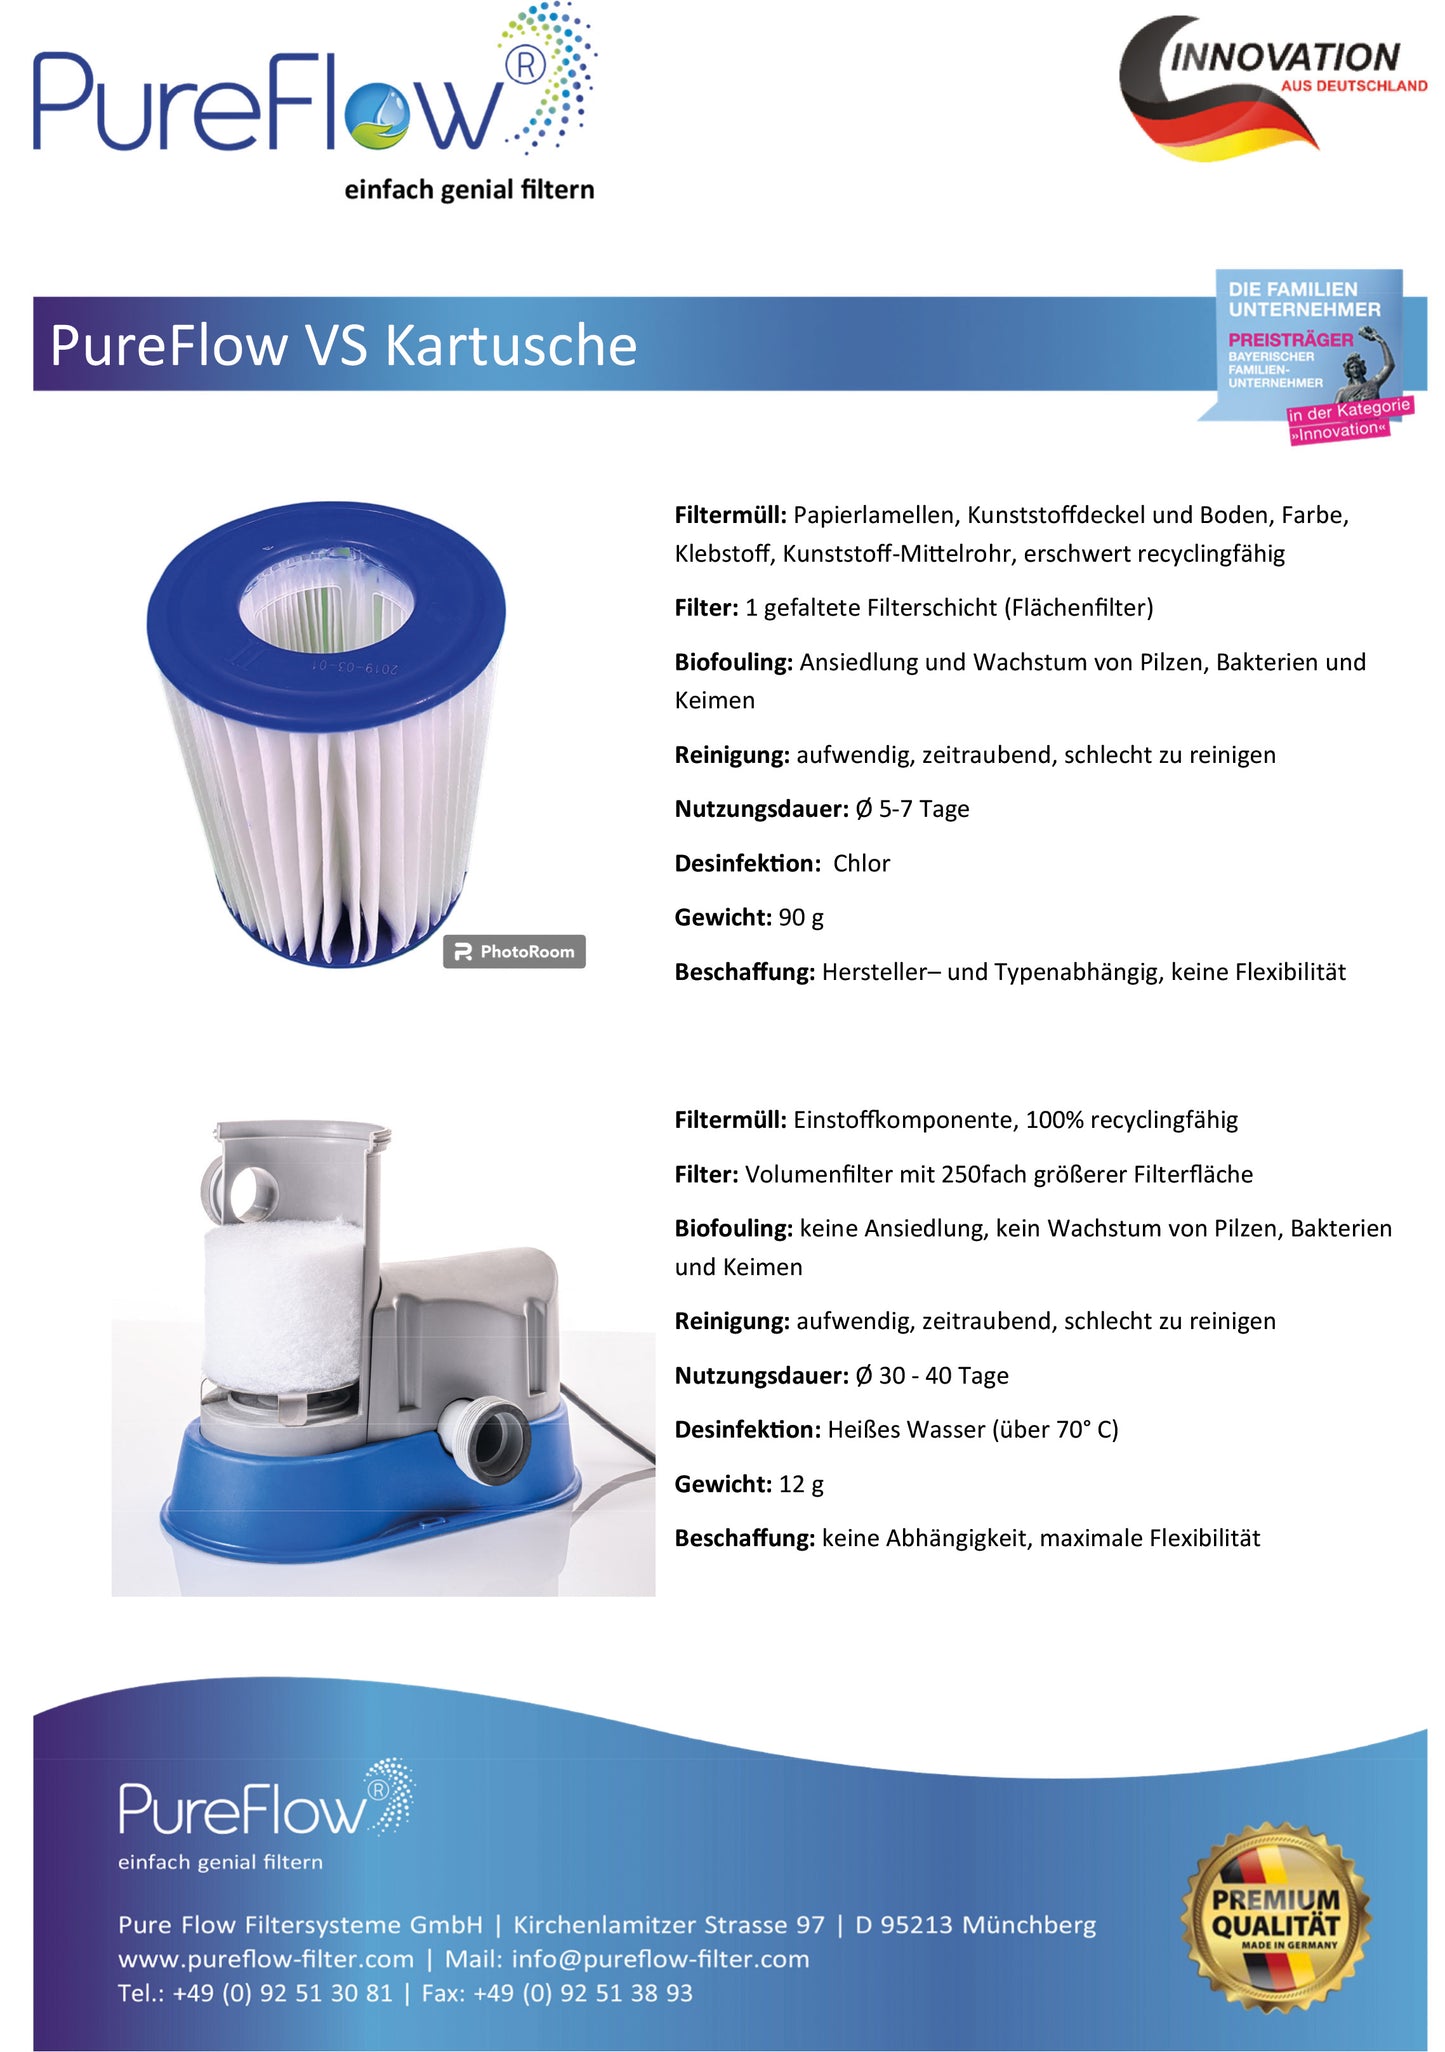 PureFlow CARTRIDGE Filter: Der innovative, waschbare Kartuschenfilter mit max. Filterleistung, Durchströmung und effizienter Filtration. Kompatibel zu Flowclear, Intex, Bestway, Poolican aber 250fach höheres Filtervolumen. Desinfektion ohne Chlor.